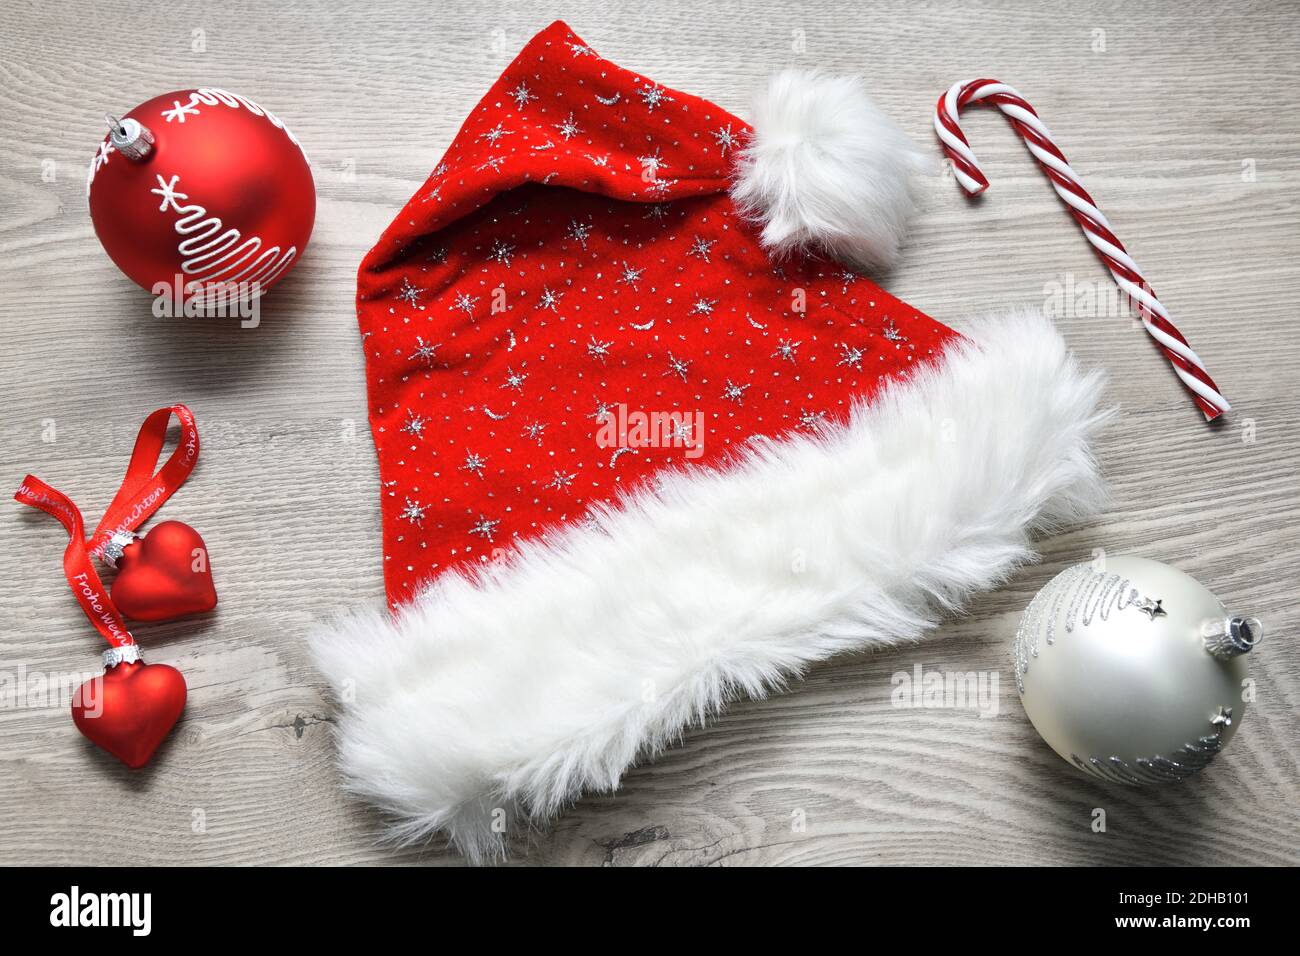 Weihnachtsmannmütze und Weihnachtsdekoration Stock Photo